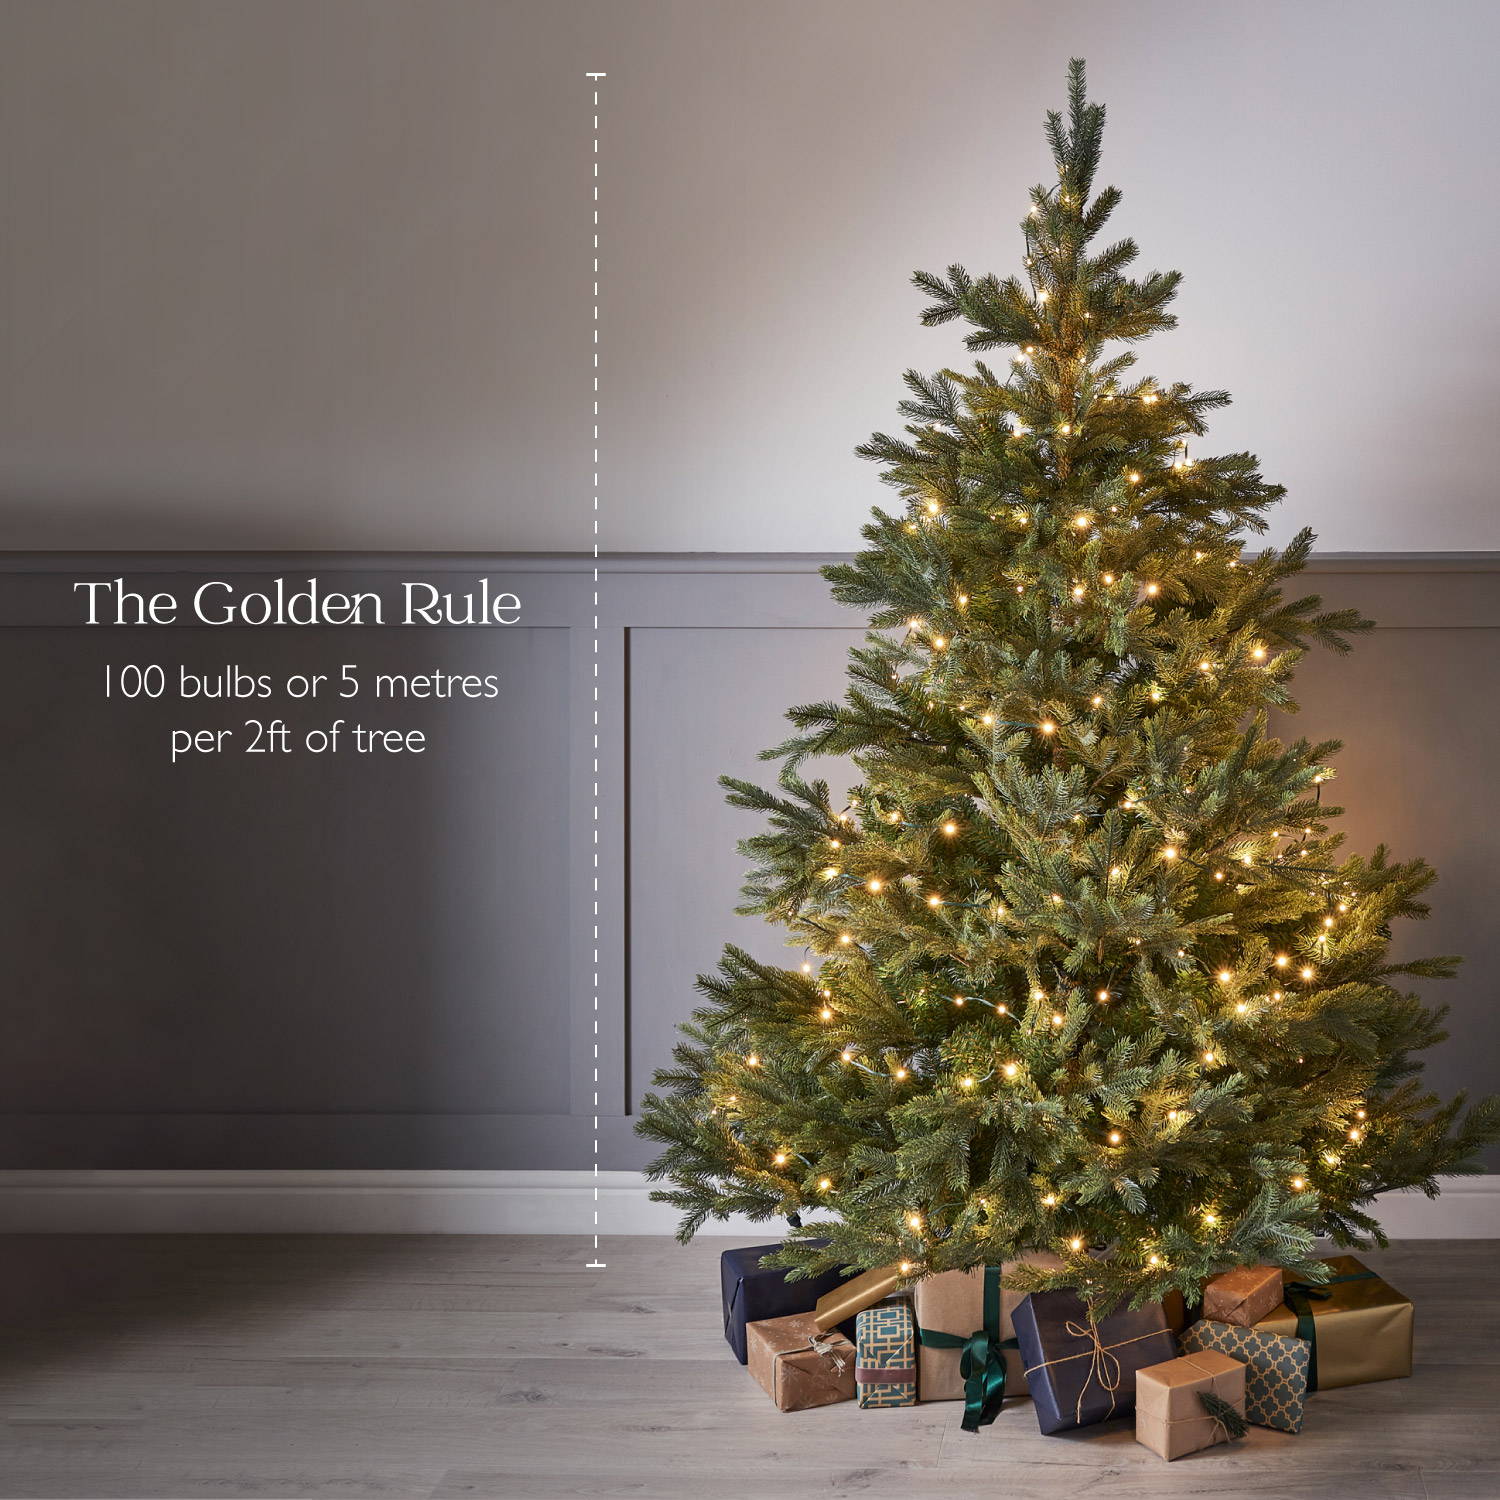 Luchten Hymne vertaler How Many Lights For My Christmas Tree | Lights4fun.co.uk